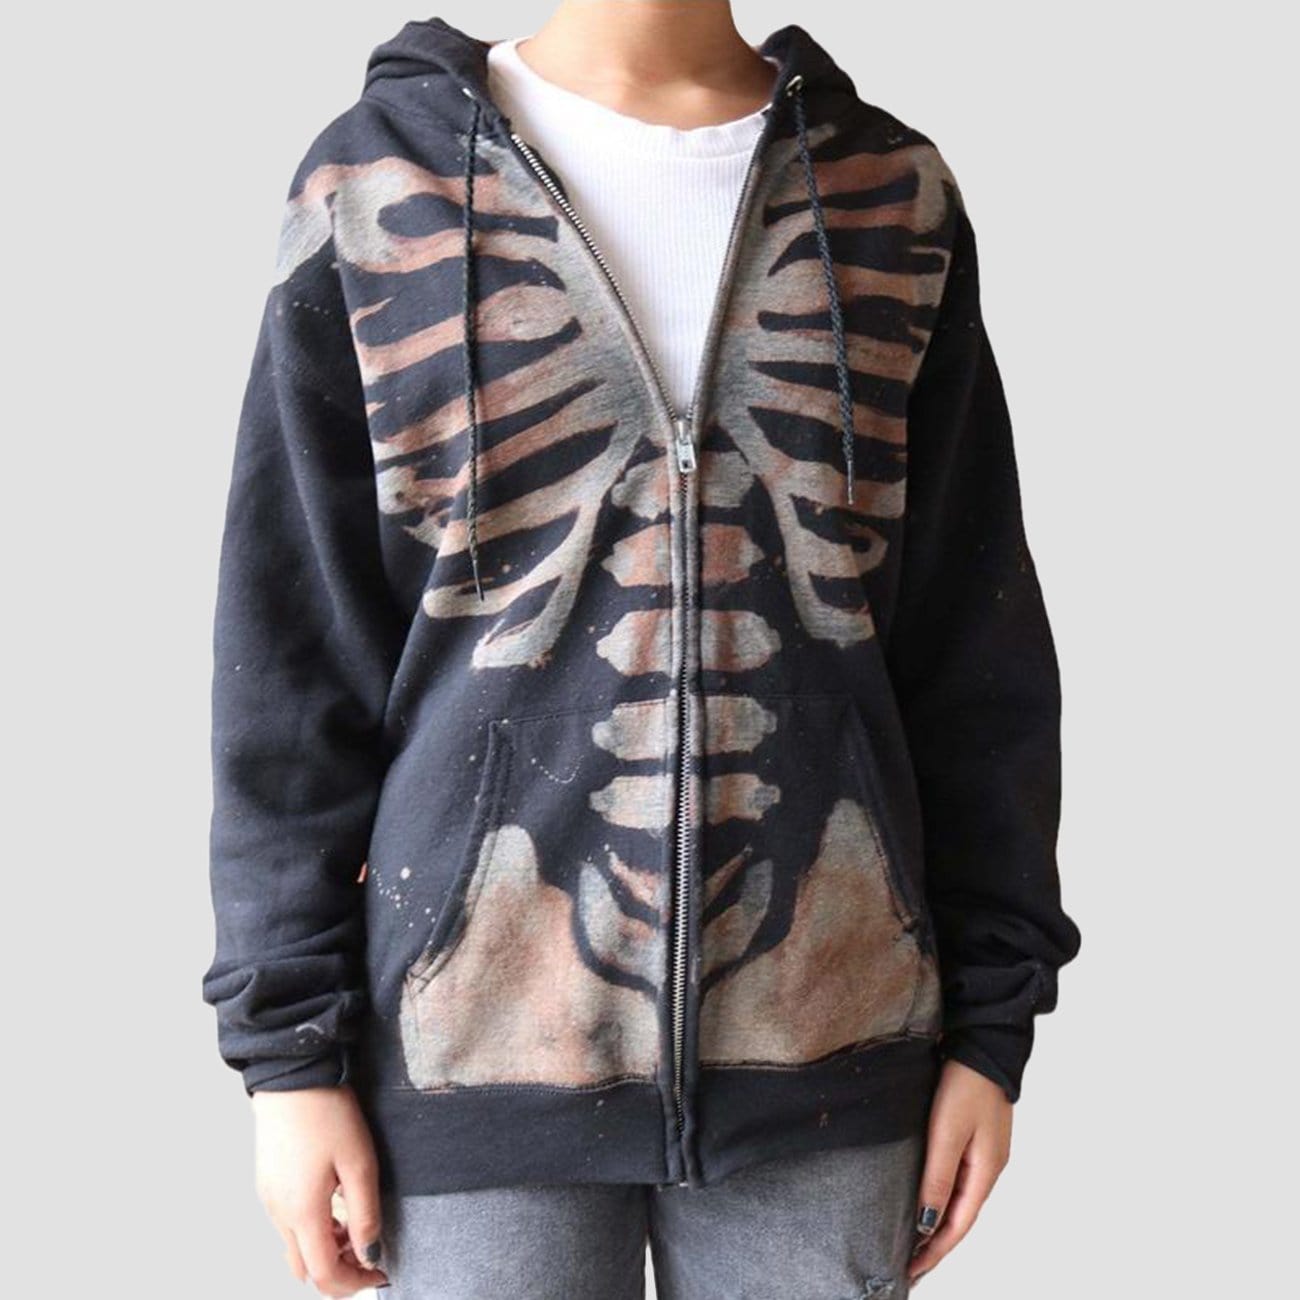 Dark Skeleton Print Hoodie Streetwear Brand Techwear Combat Tactical YUGEN THEORY